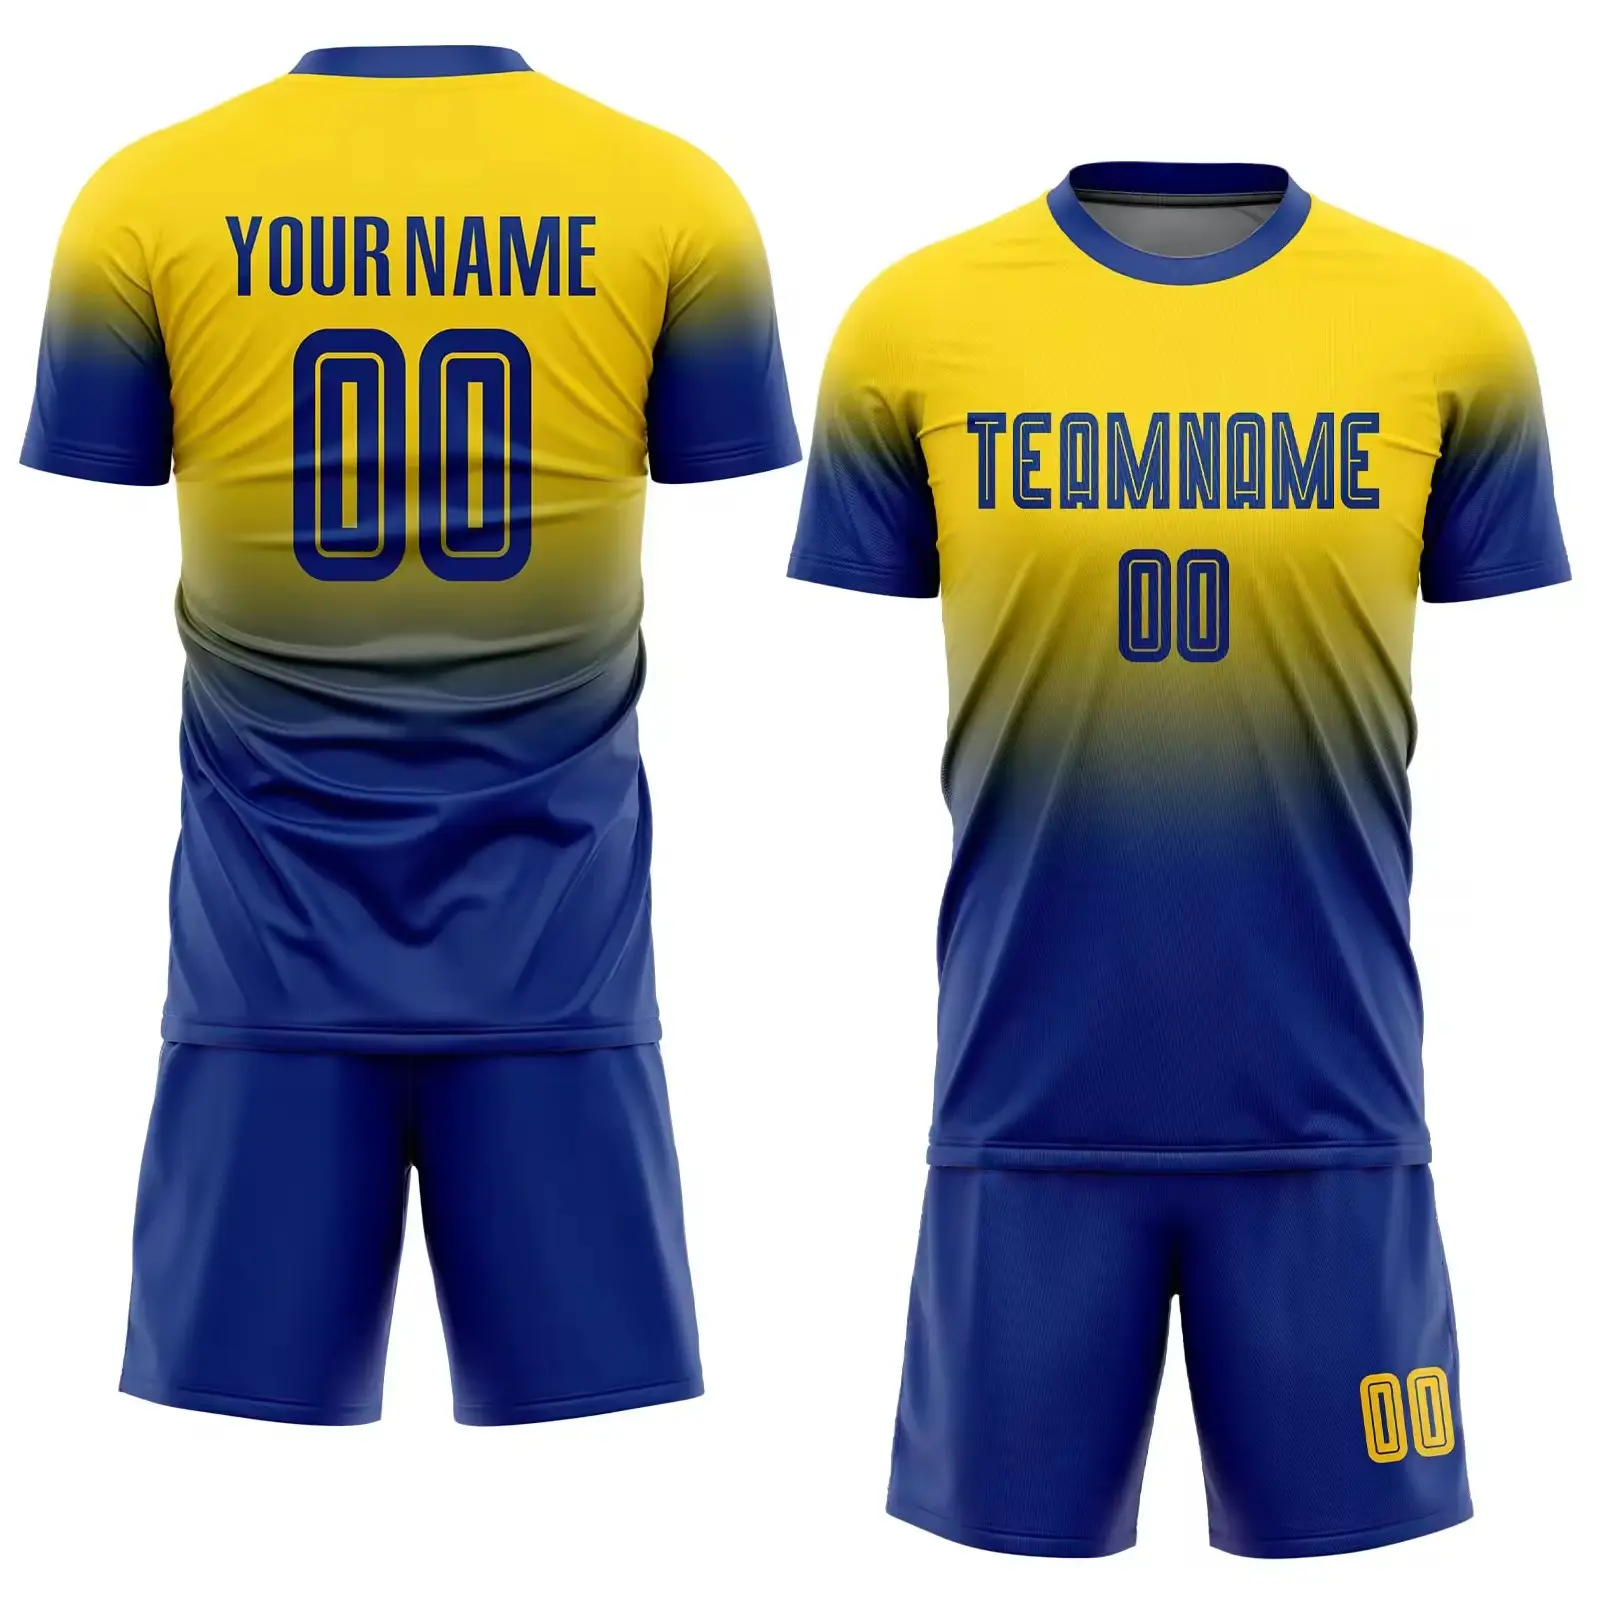 Camiseta de fútbol personalizada con gestión de la humedad, camiseta de fútbol tailandesa, uniforme de fútbol argentino Messi, equipo masculino de nueva temporada